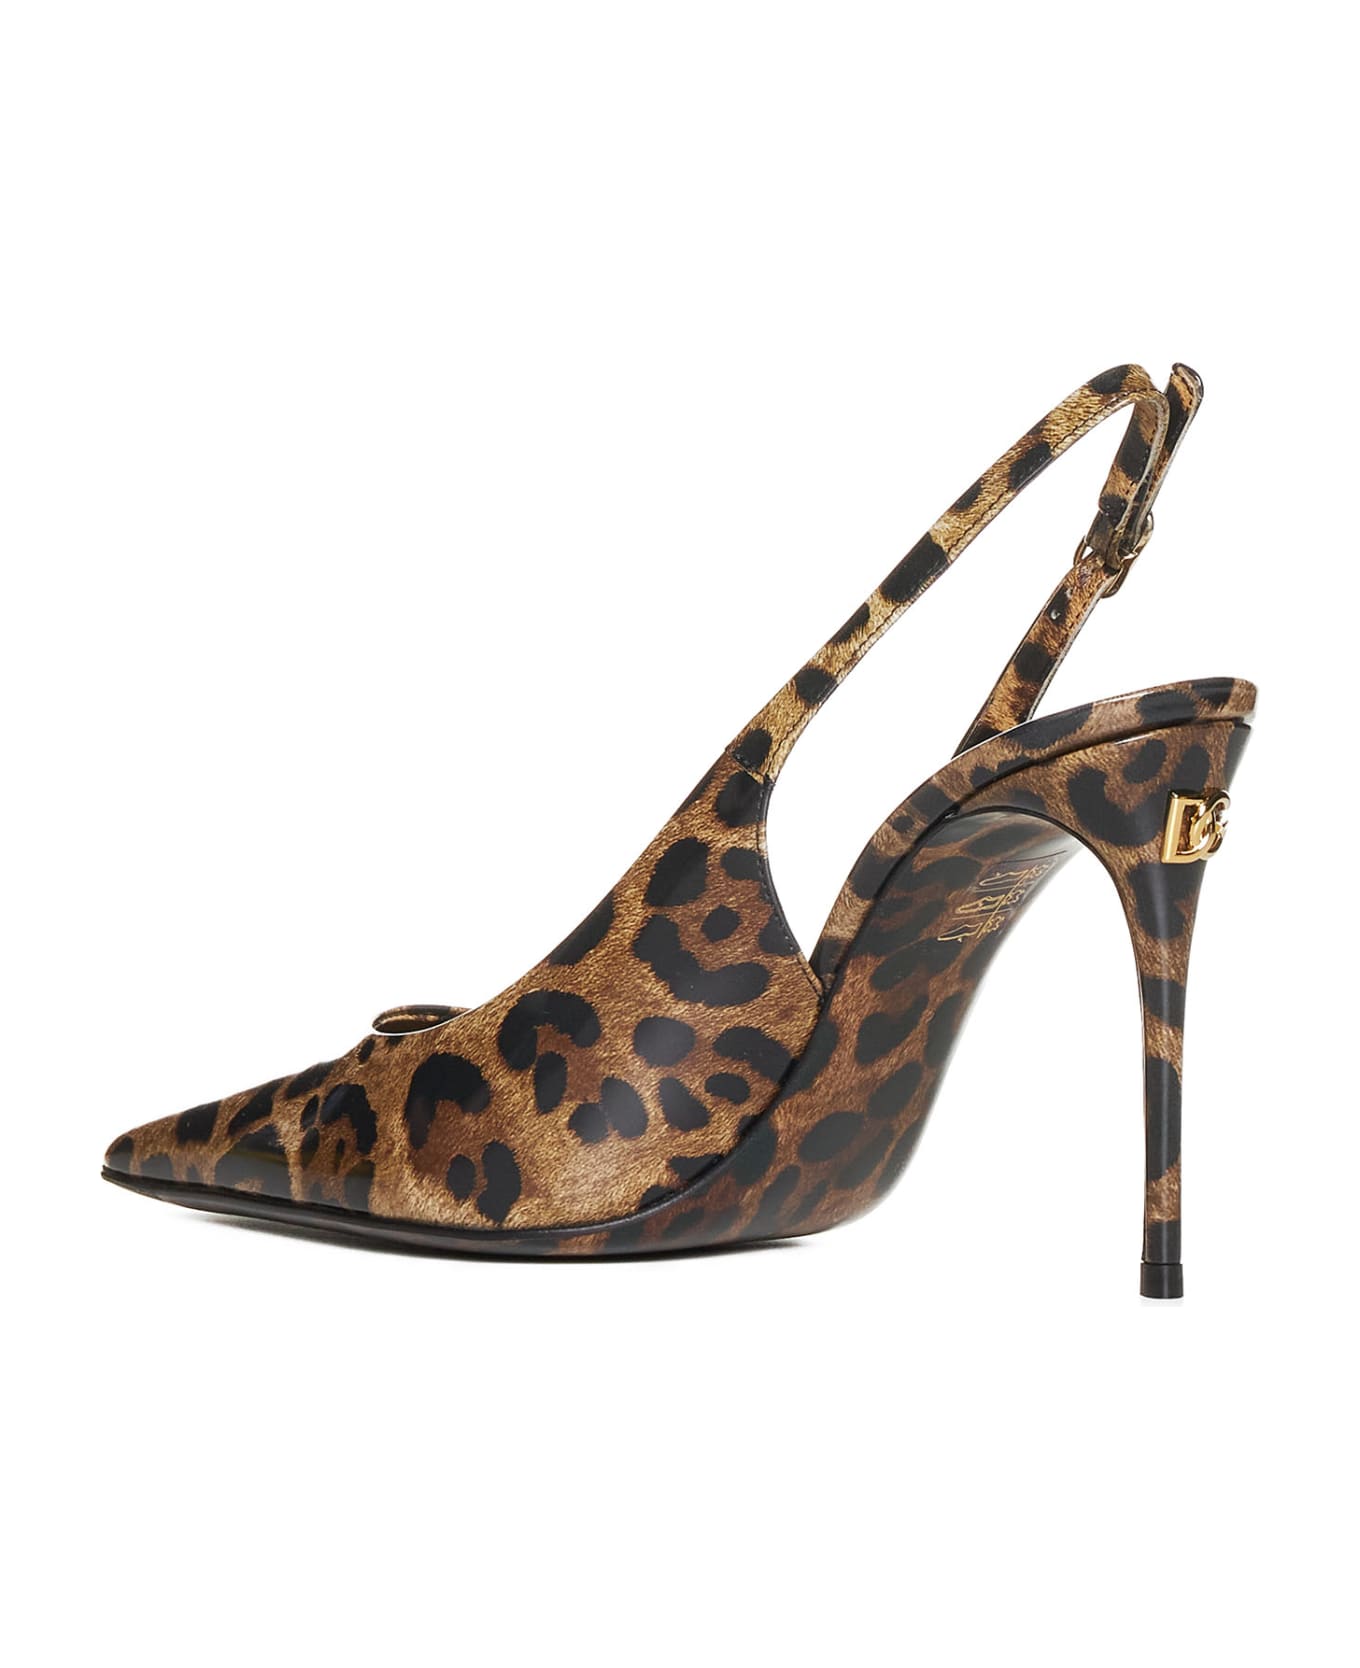 Dolce & Gabbana High-heeled shoe - Leo